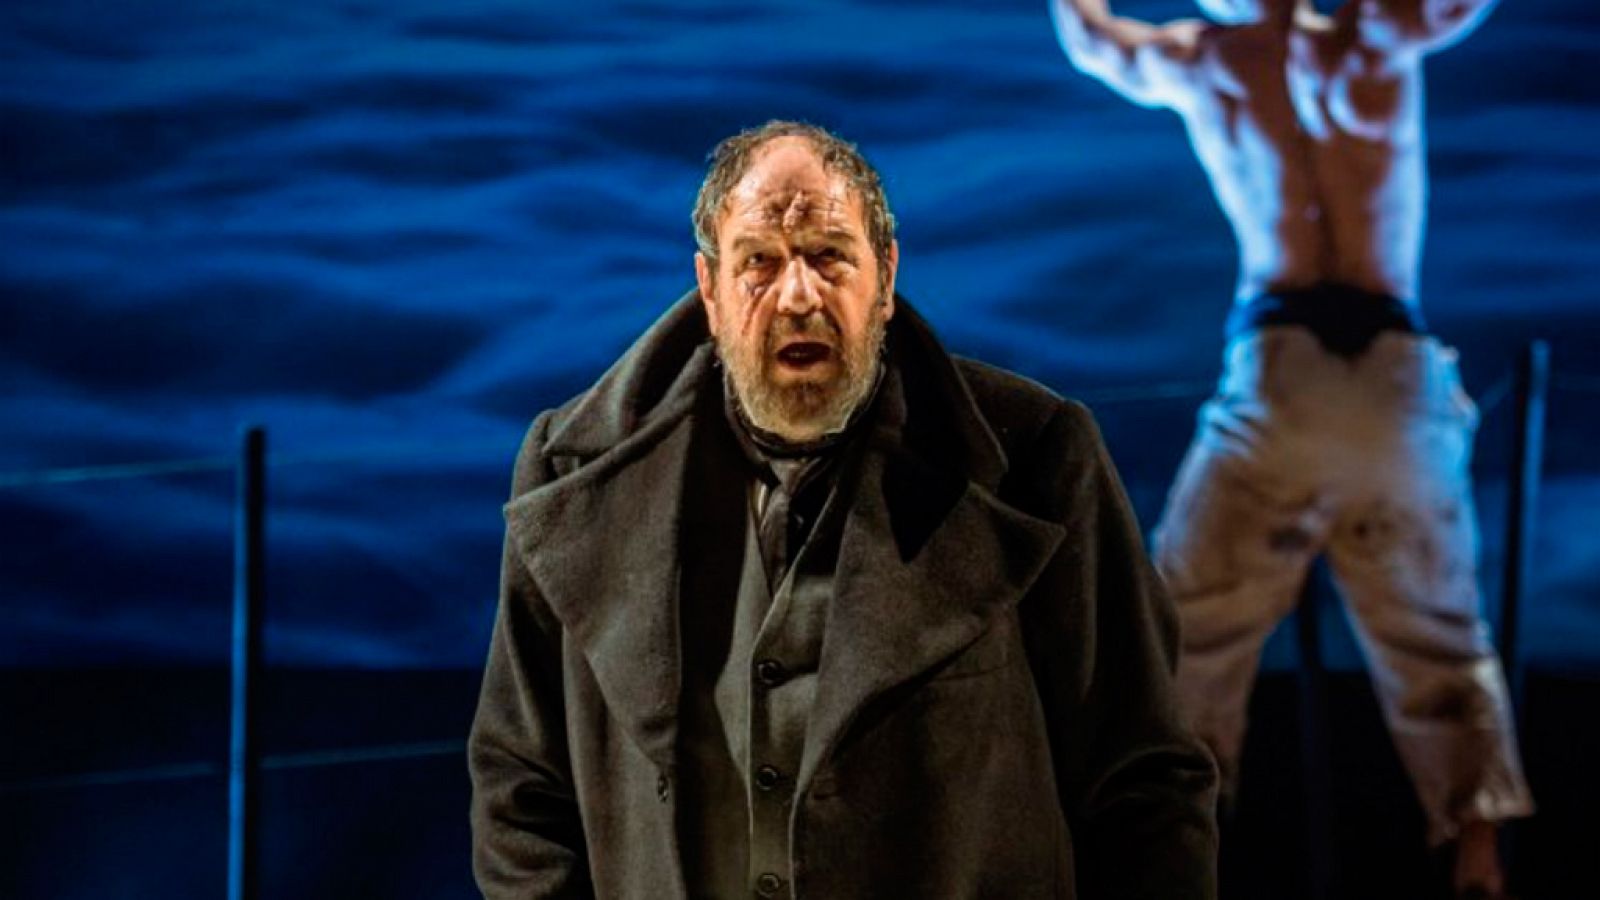 Telediario 1: Jose María Pou da vida al capitan Ahab en una versión teatral de 'Moby Dick' | RTVE Play